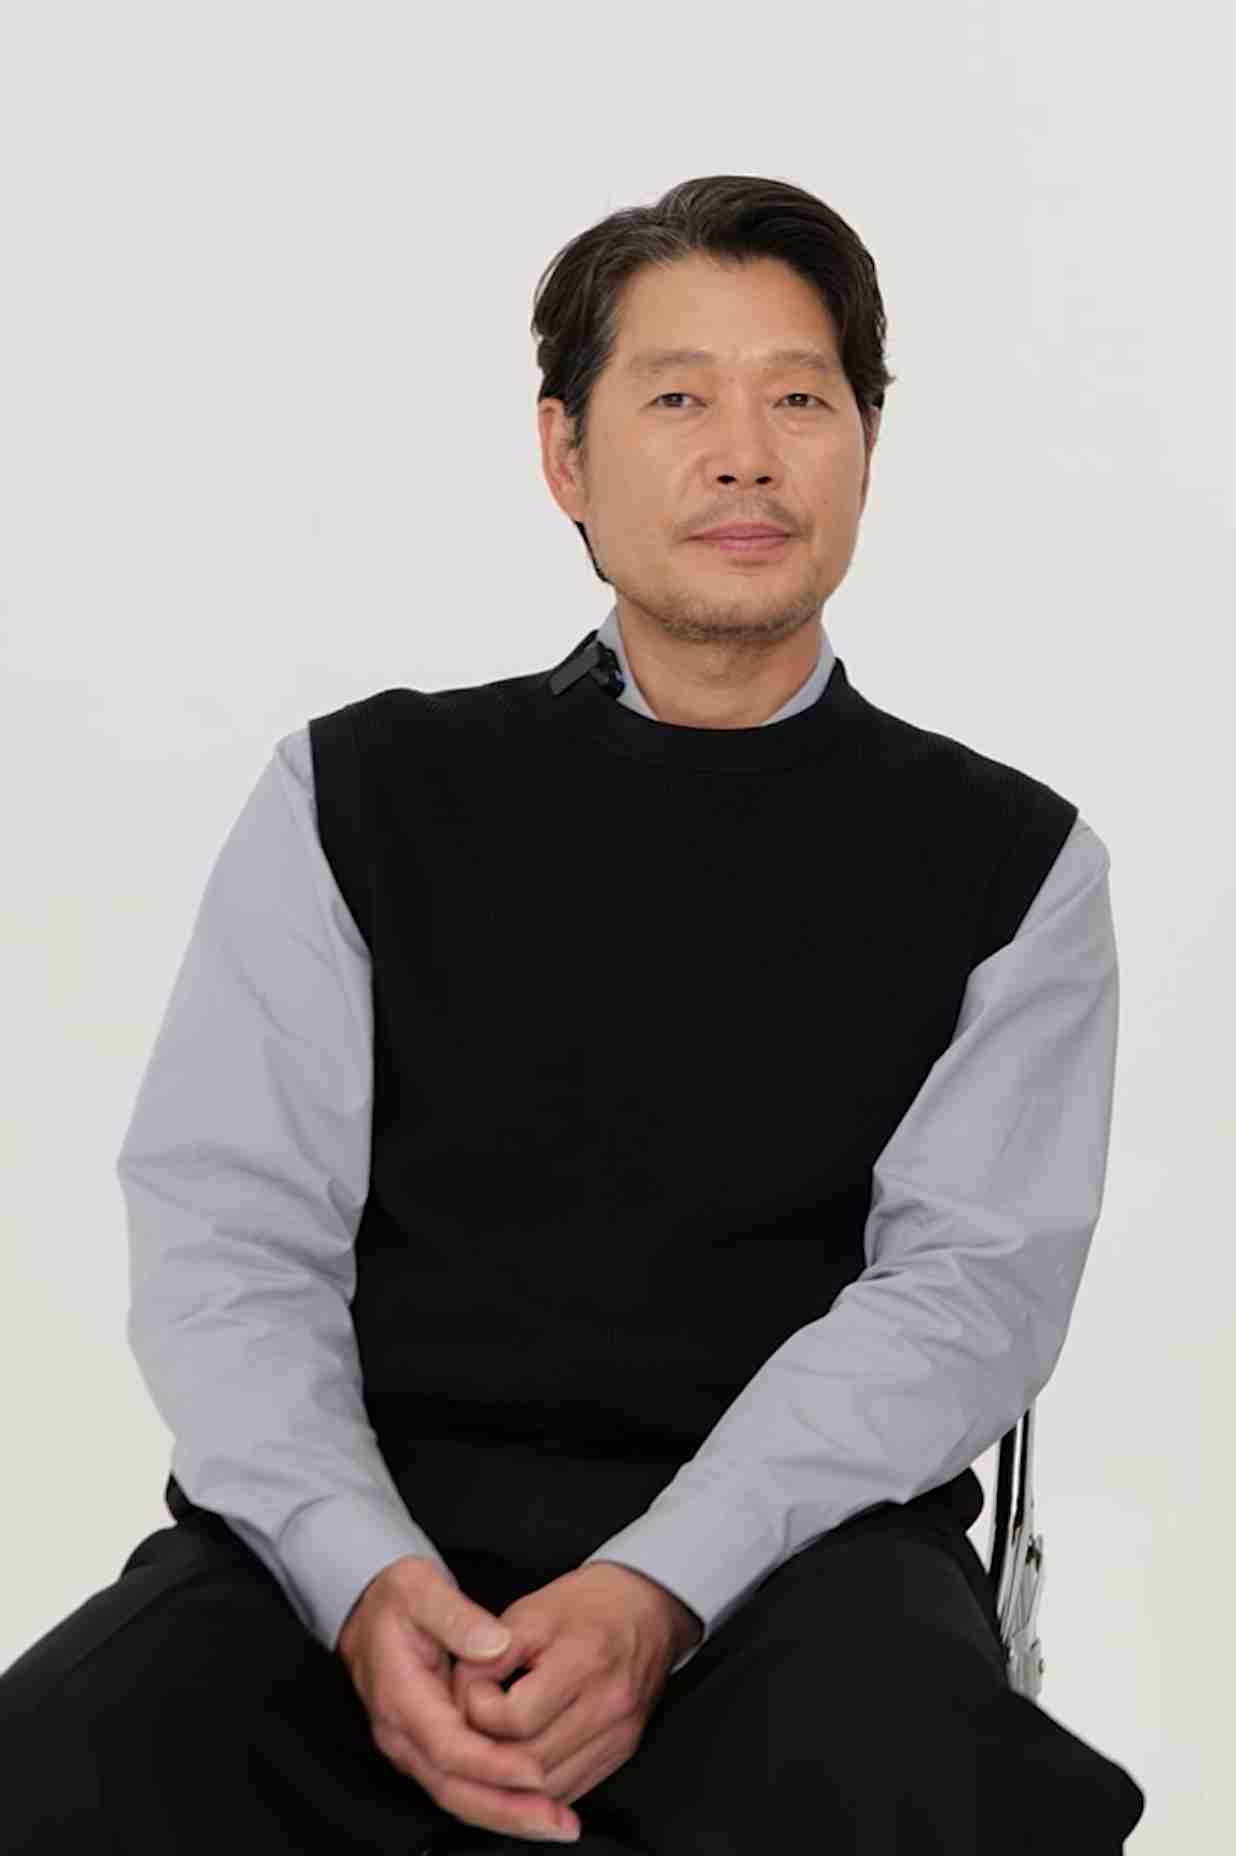 Yoo Jae-myung